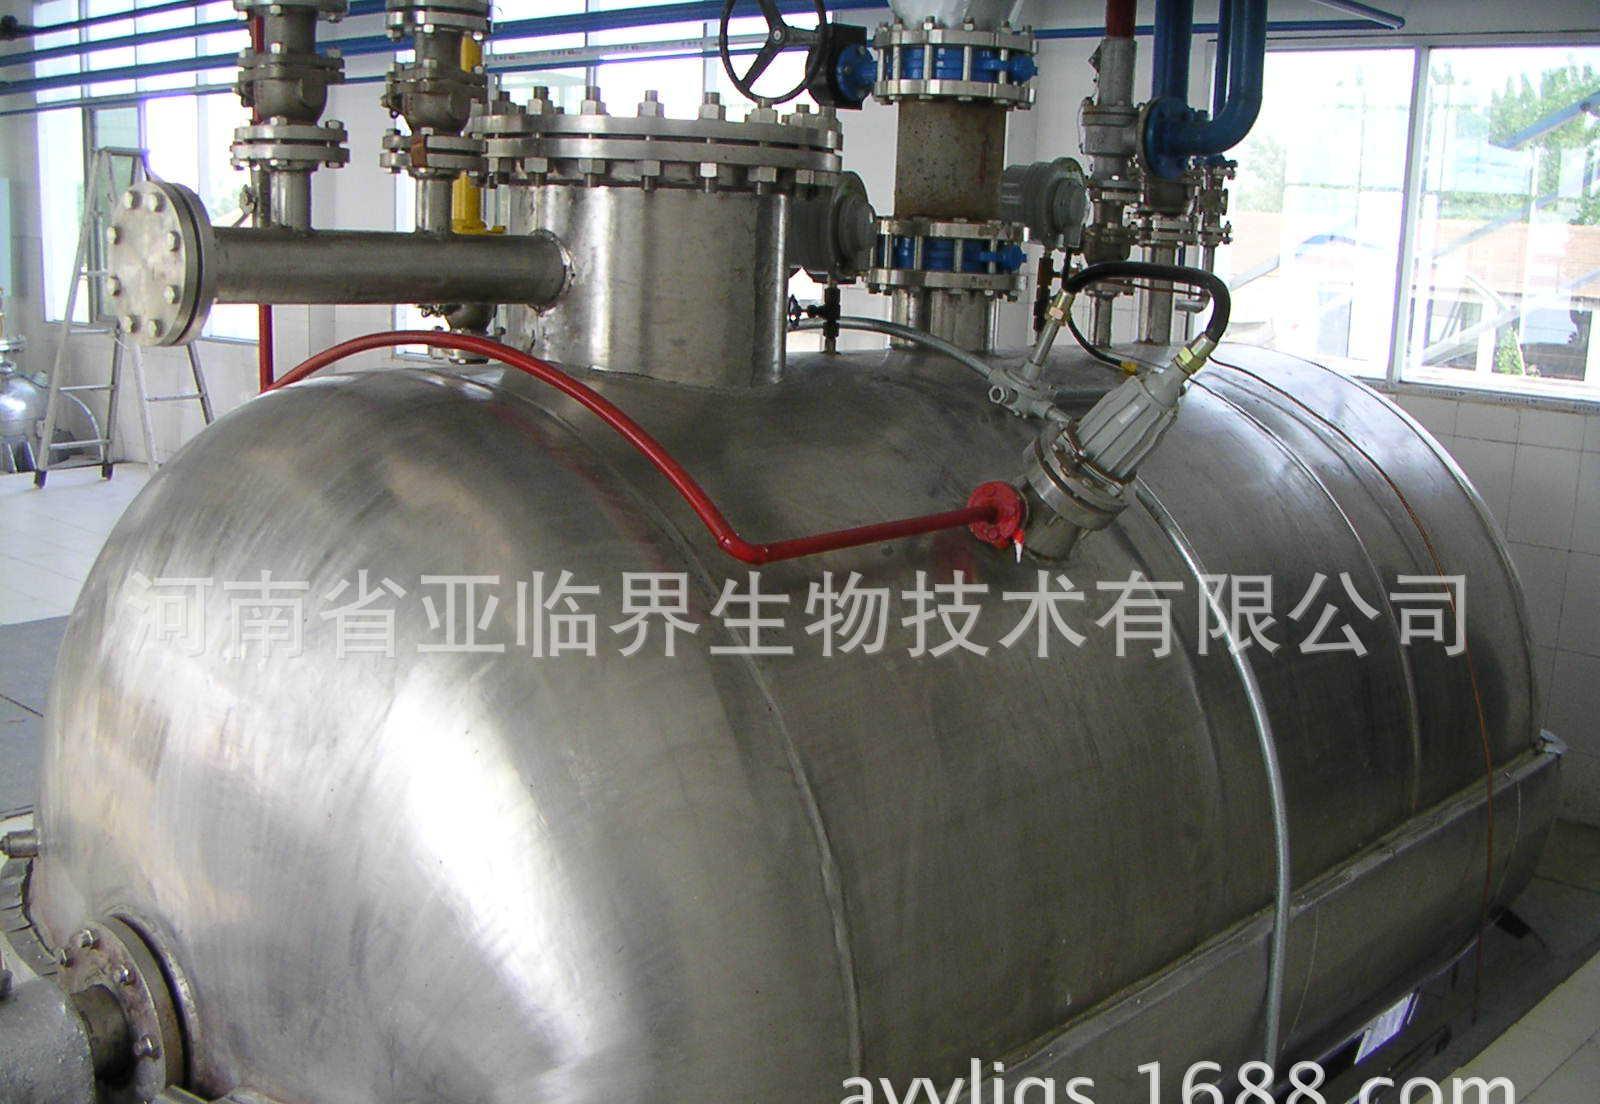 亚临界公司承接元宝枫籽油油脂设备 工程项目